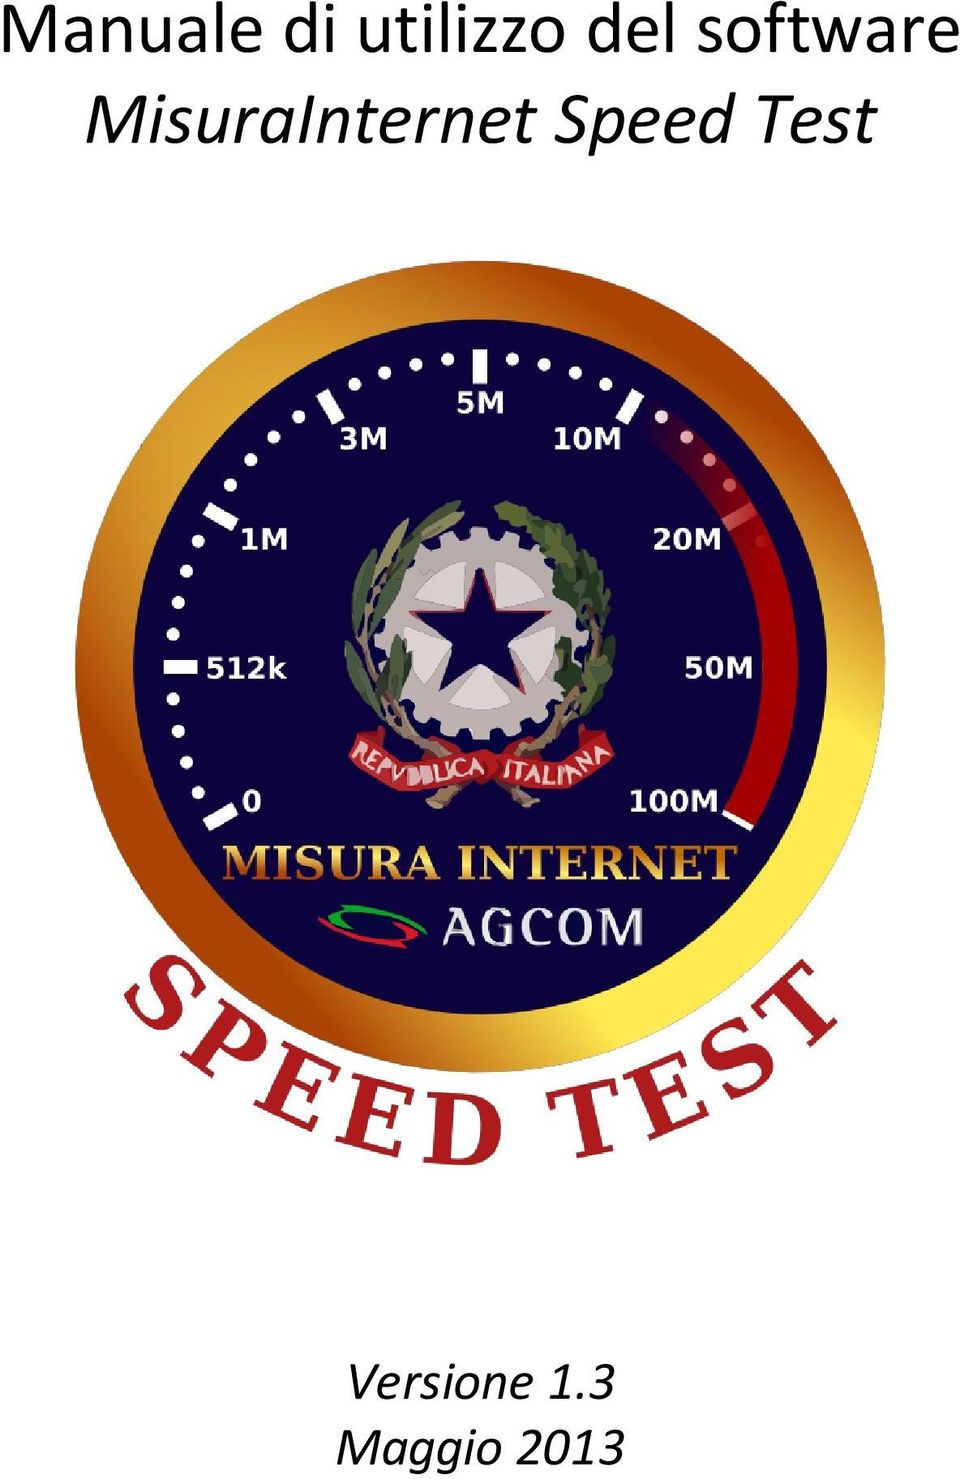 MisuraInternet Speed